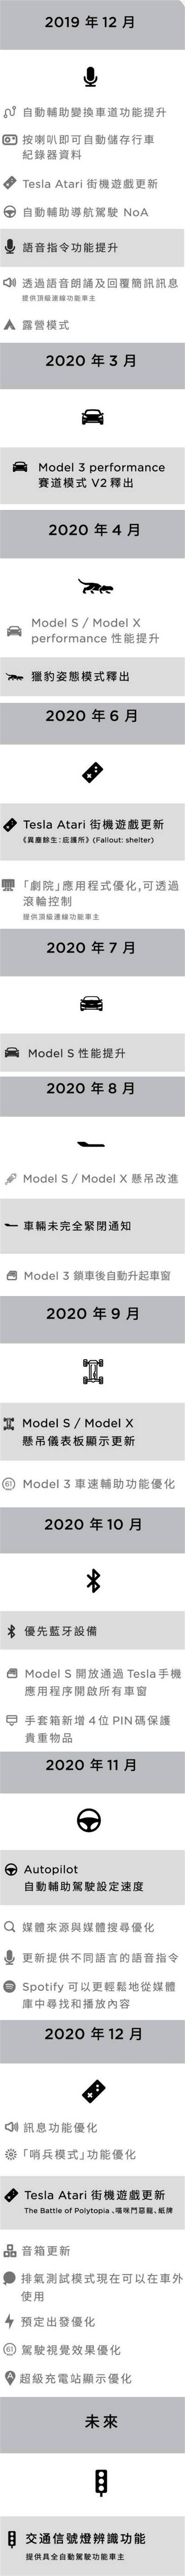 台灣特斯拉 2020 年軟體更新了這 34 個功能，也預告未來推出 FSD 紅綠燈識別控制